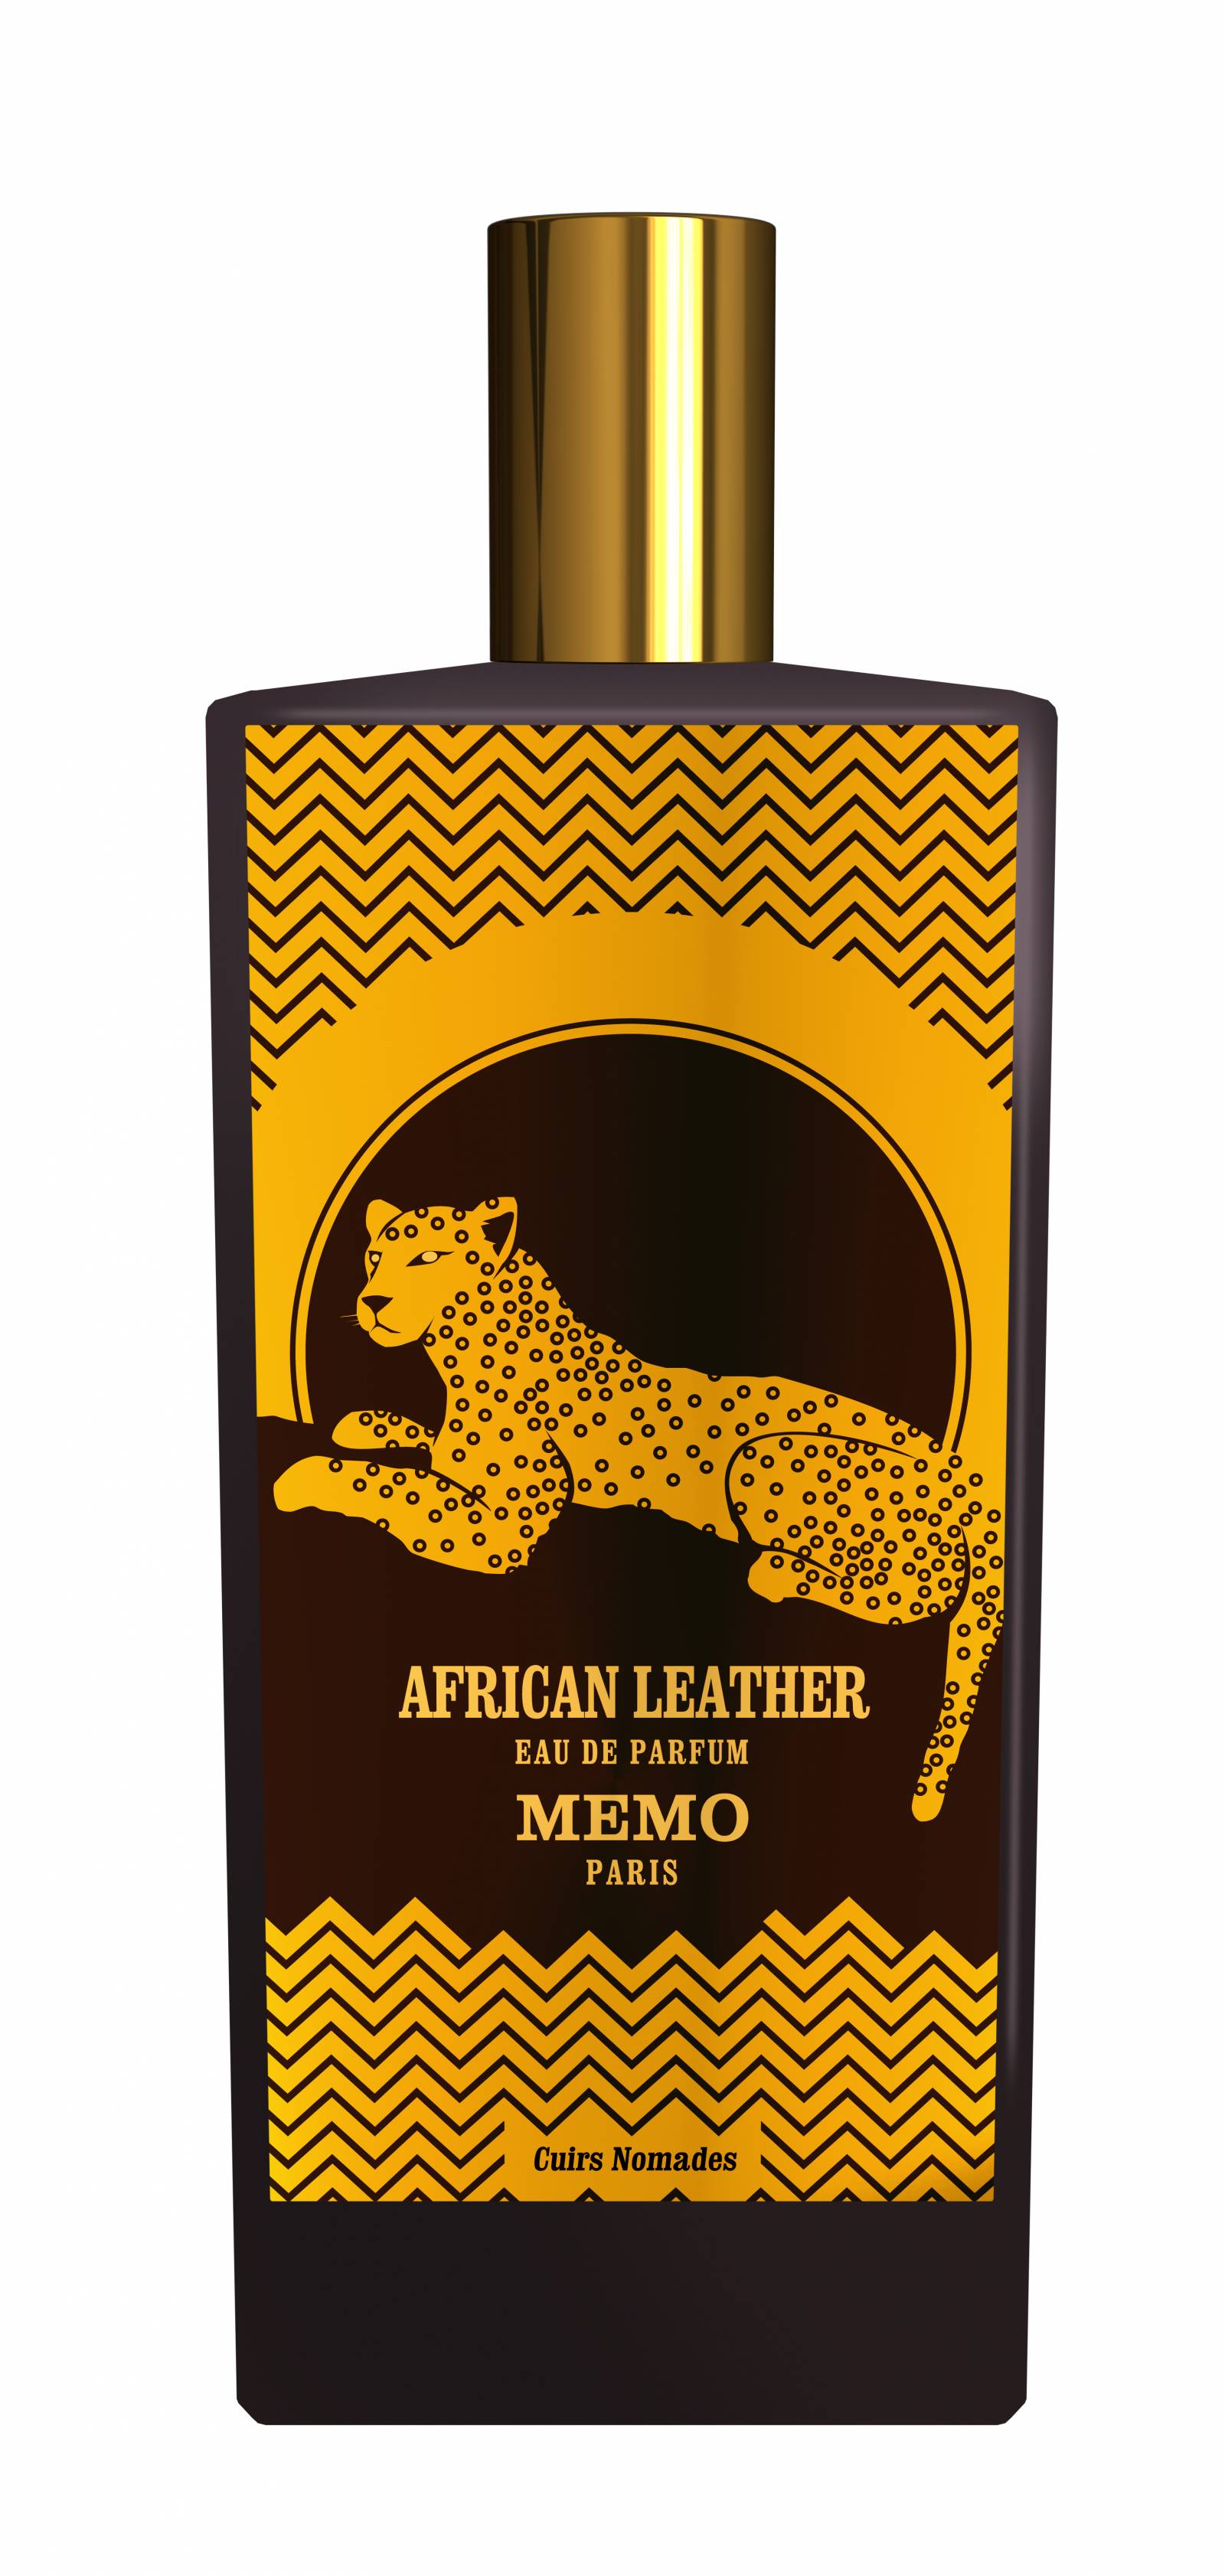  Memo African Leather, 895 zł/ 75 ml, perfumeriaquality.pl//Fot. materiały prasowe